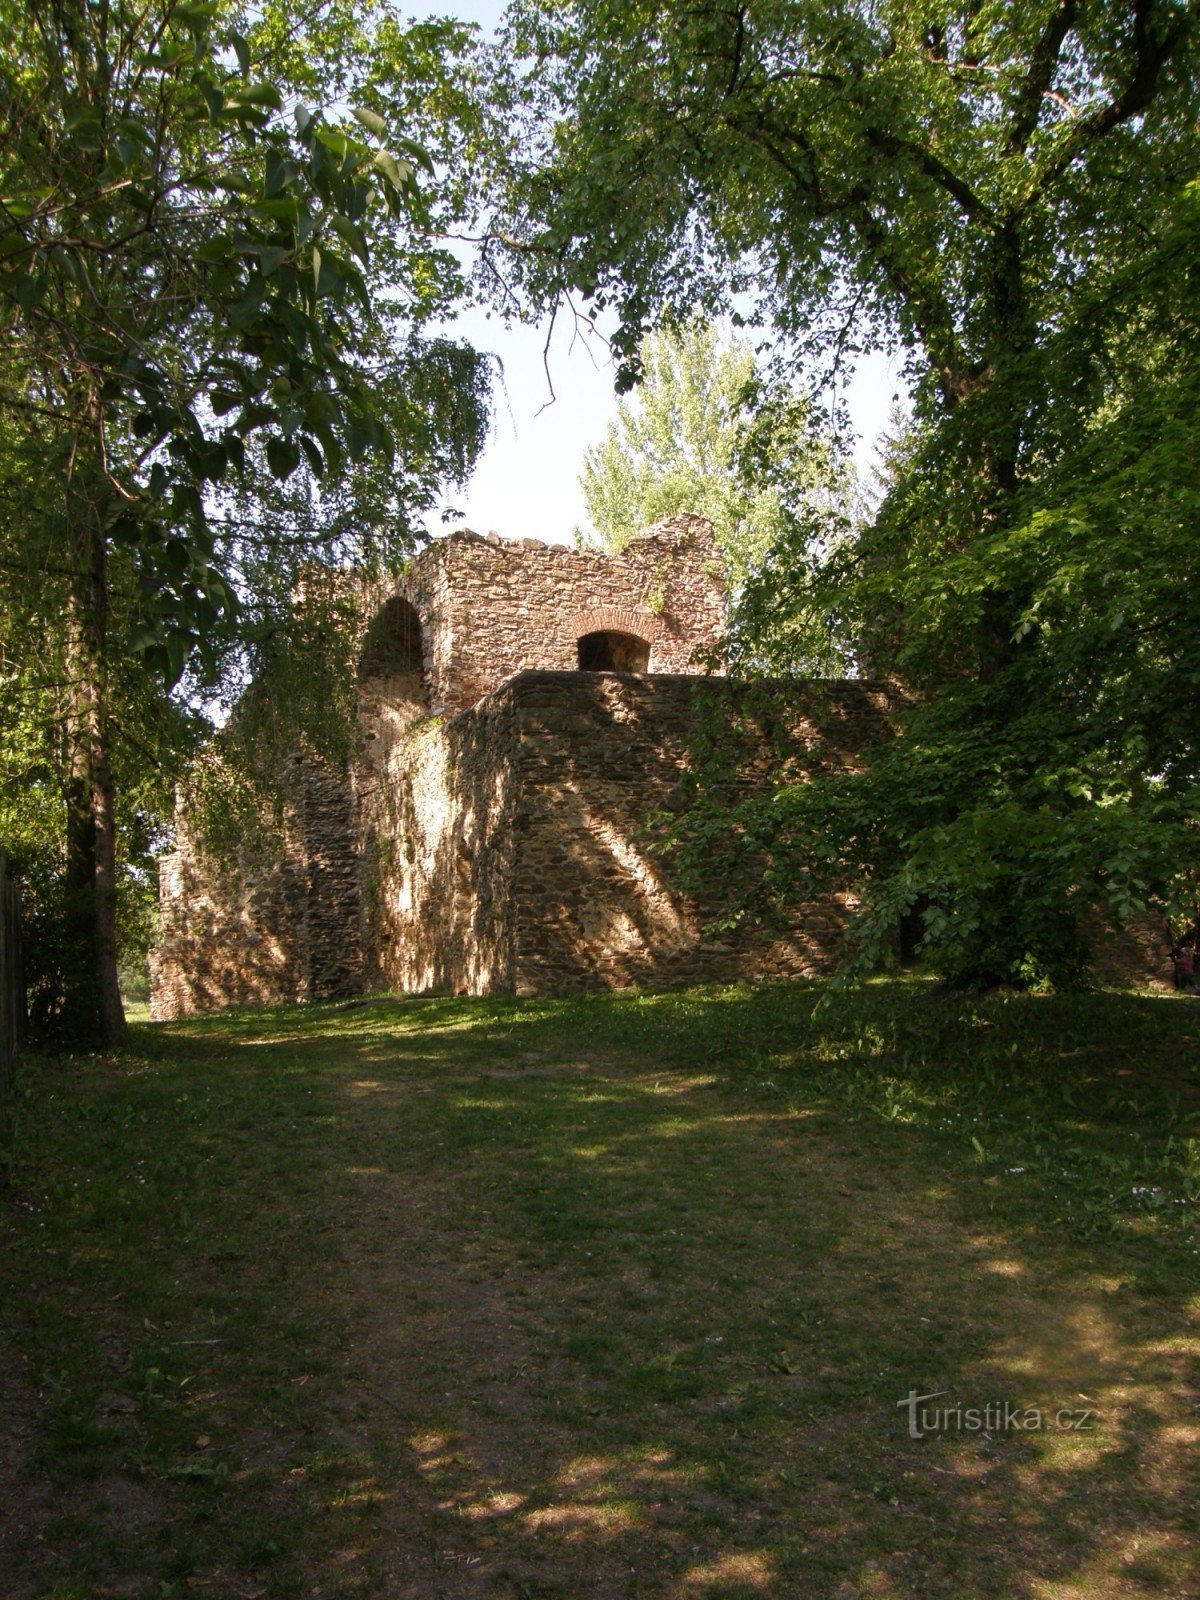 Фортеця знаходиться приблизно за 70 м від центру села.